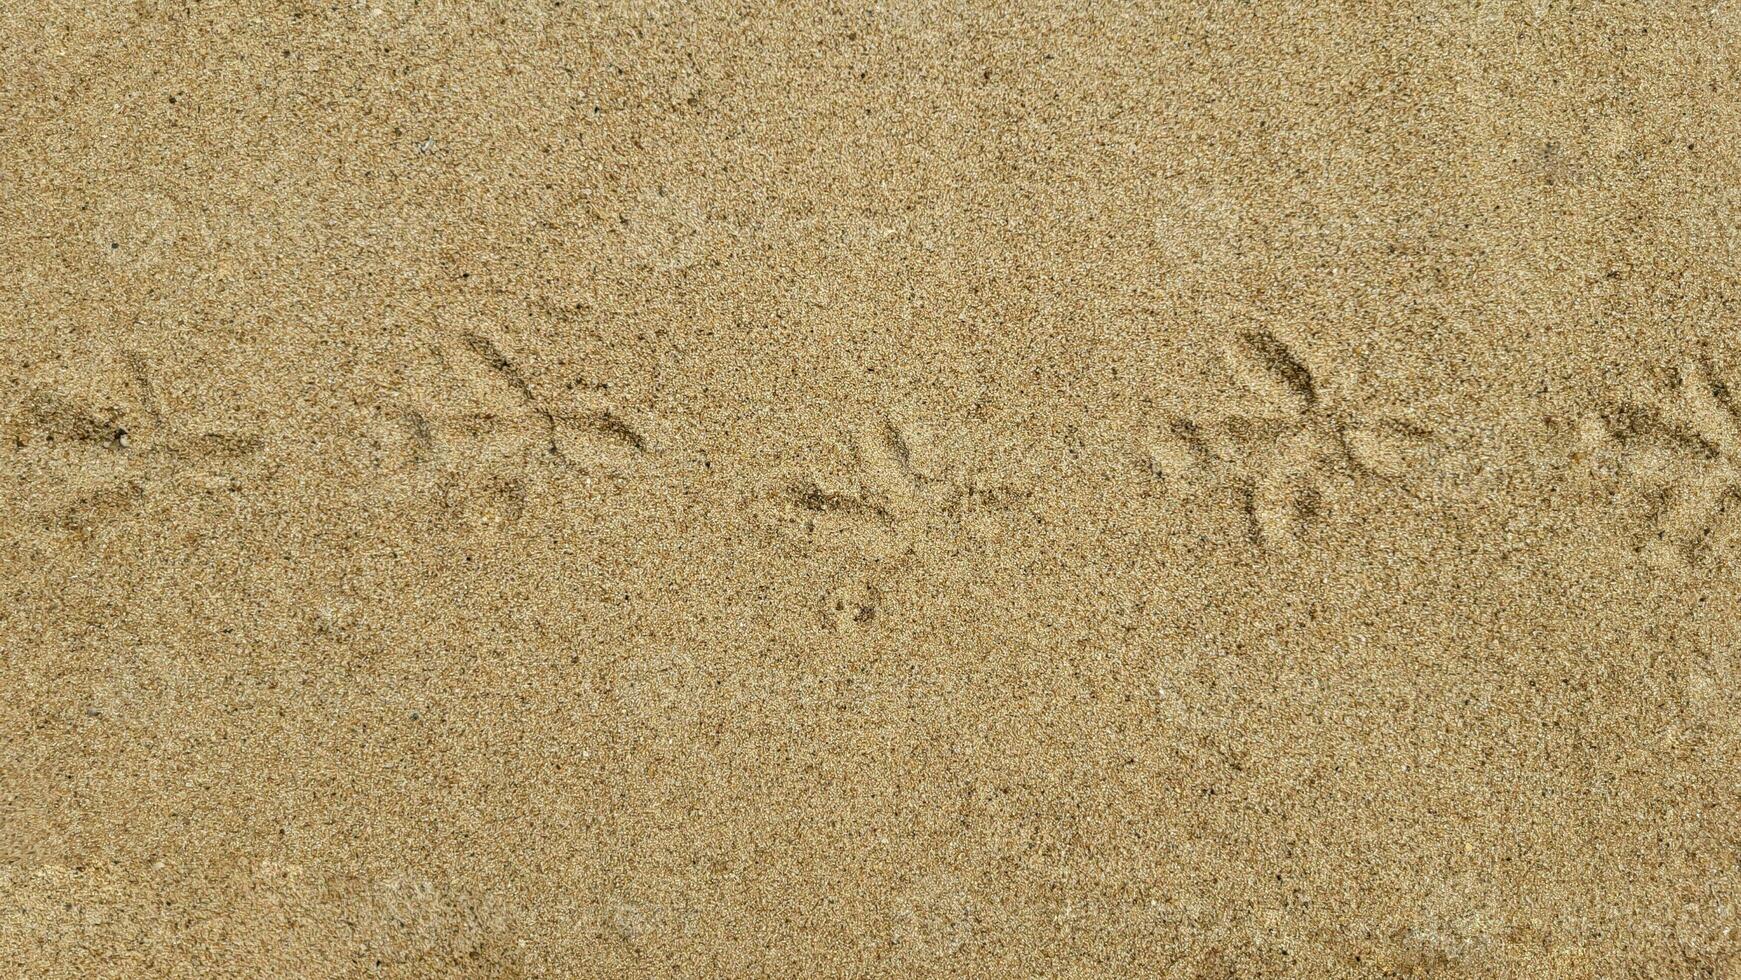 Bird tracks on a sandy beach on a sunny day photo